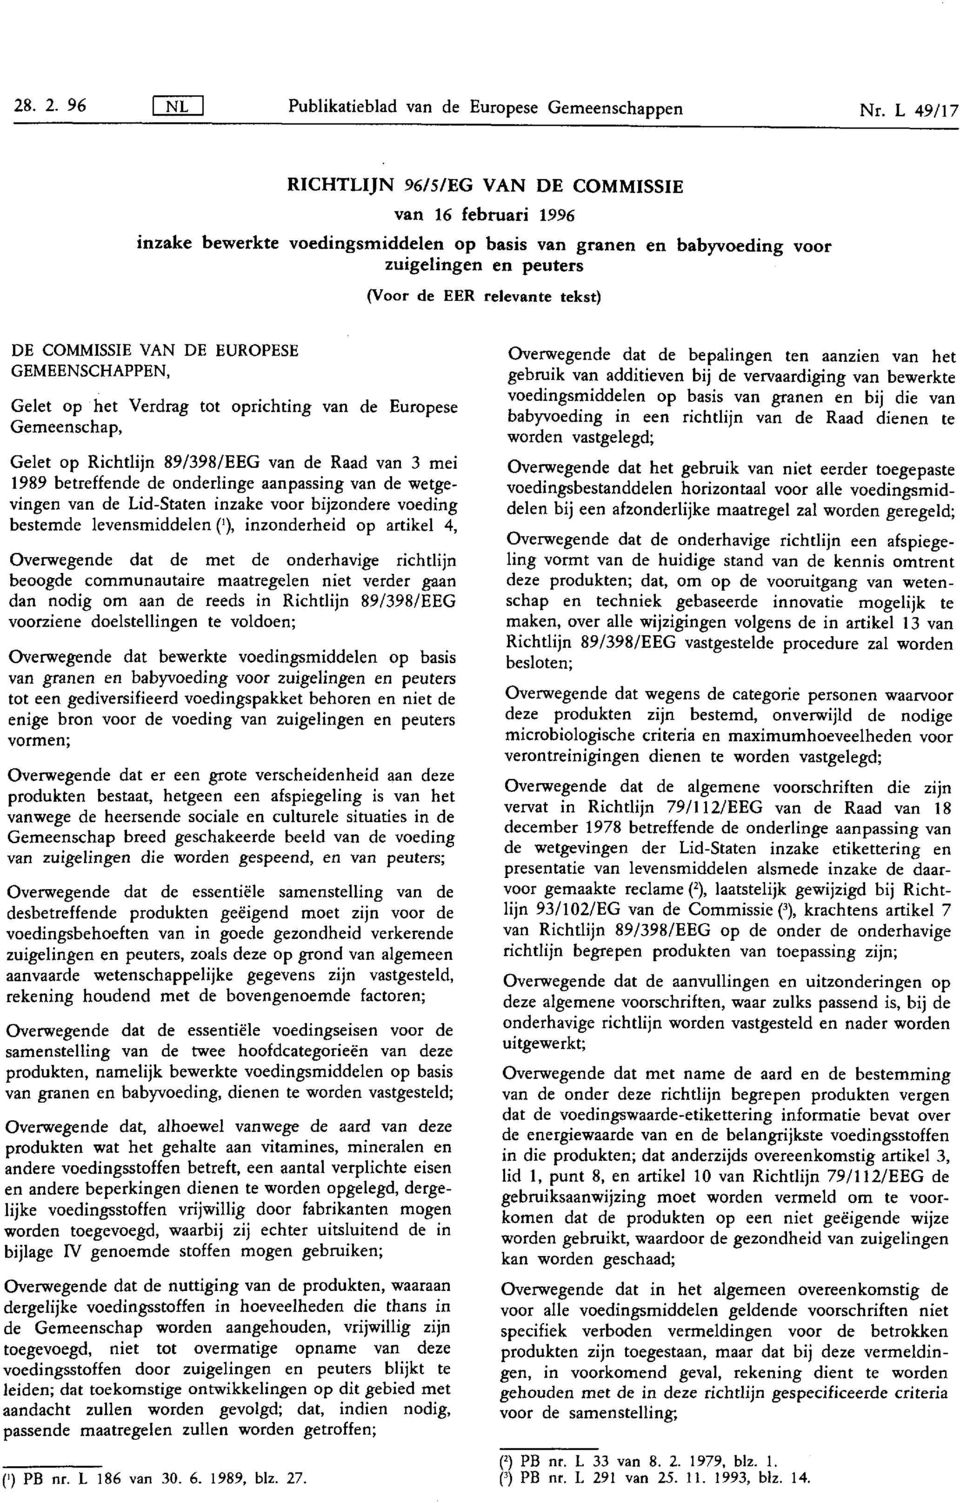 COMMISSIE VAN DE EUROPESE GEMEENSCHAPPEN, Gelet op het Verdrag tot oprichting van de Europese Gemeenschap, Gelet op Richtlijn 89/398/ EEG van de Raad van 3 mei 1989 betreffende de onderlinge